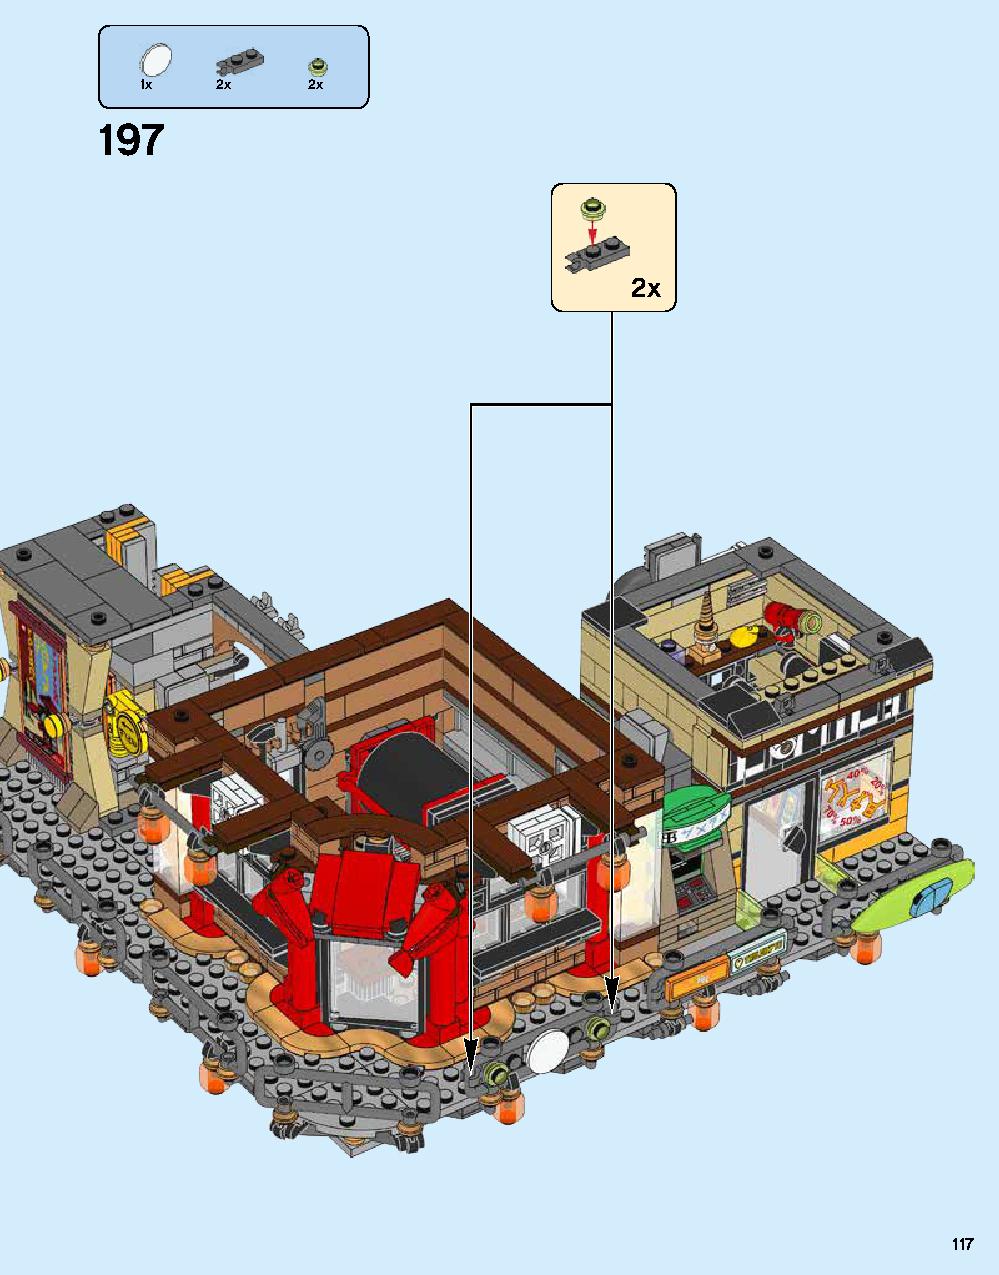 ニンジャゴー シティ 70620 レゴの商品情報 レゴの説明書・組立方法 117 page